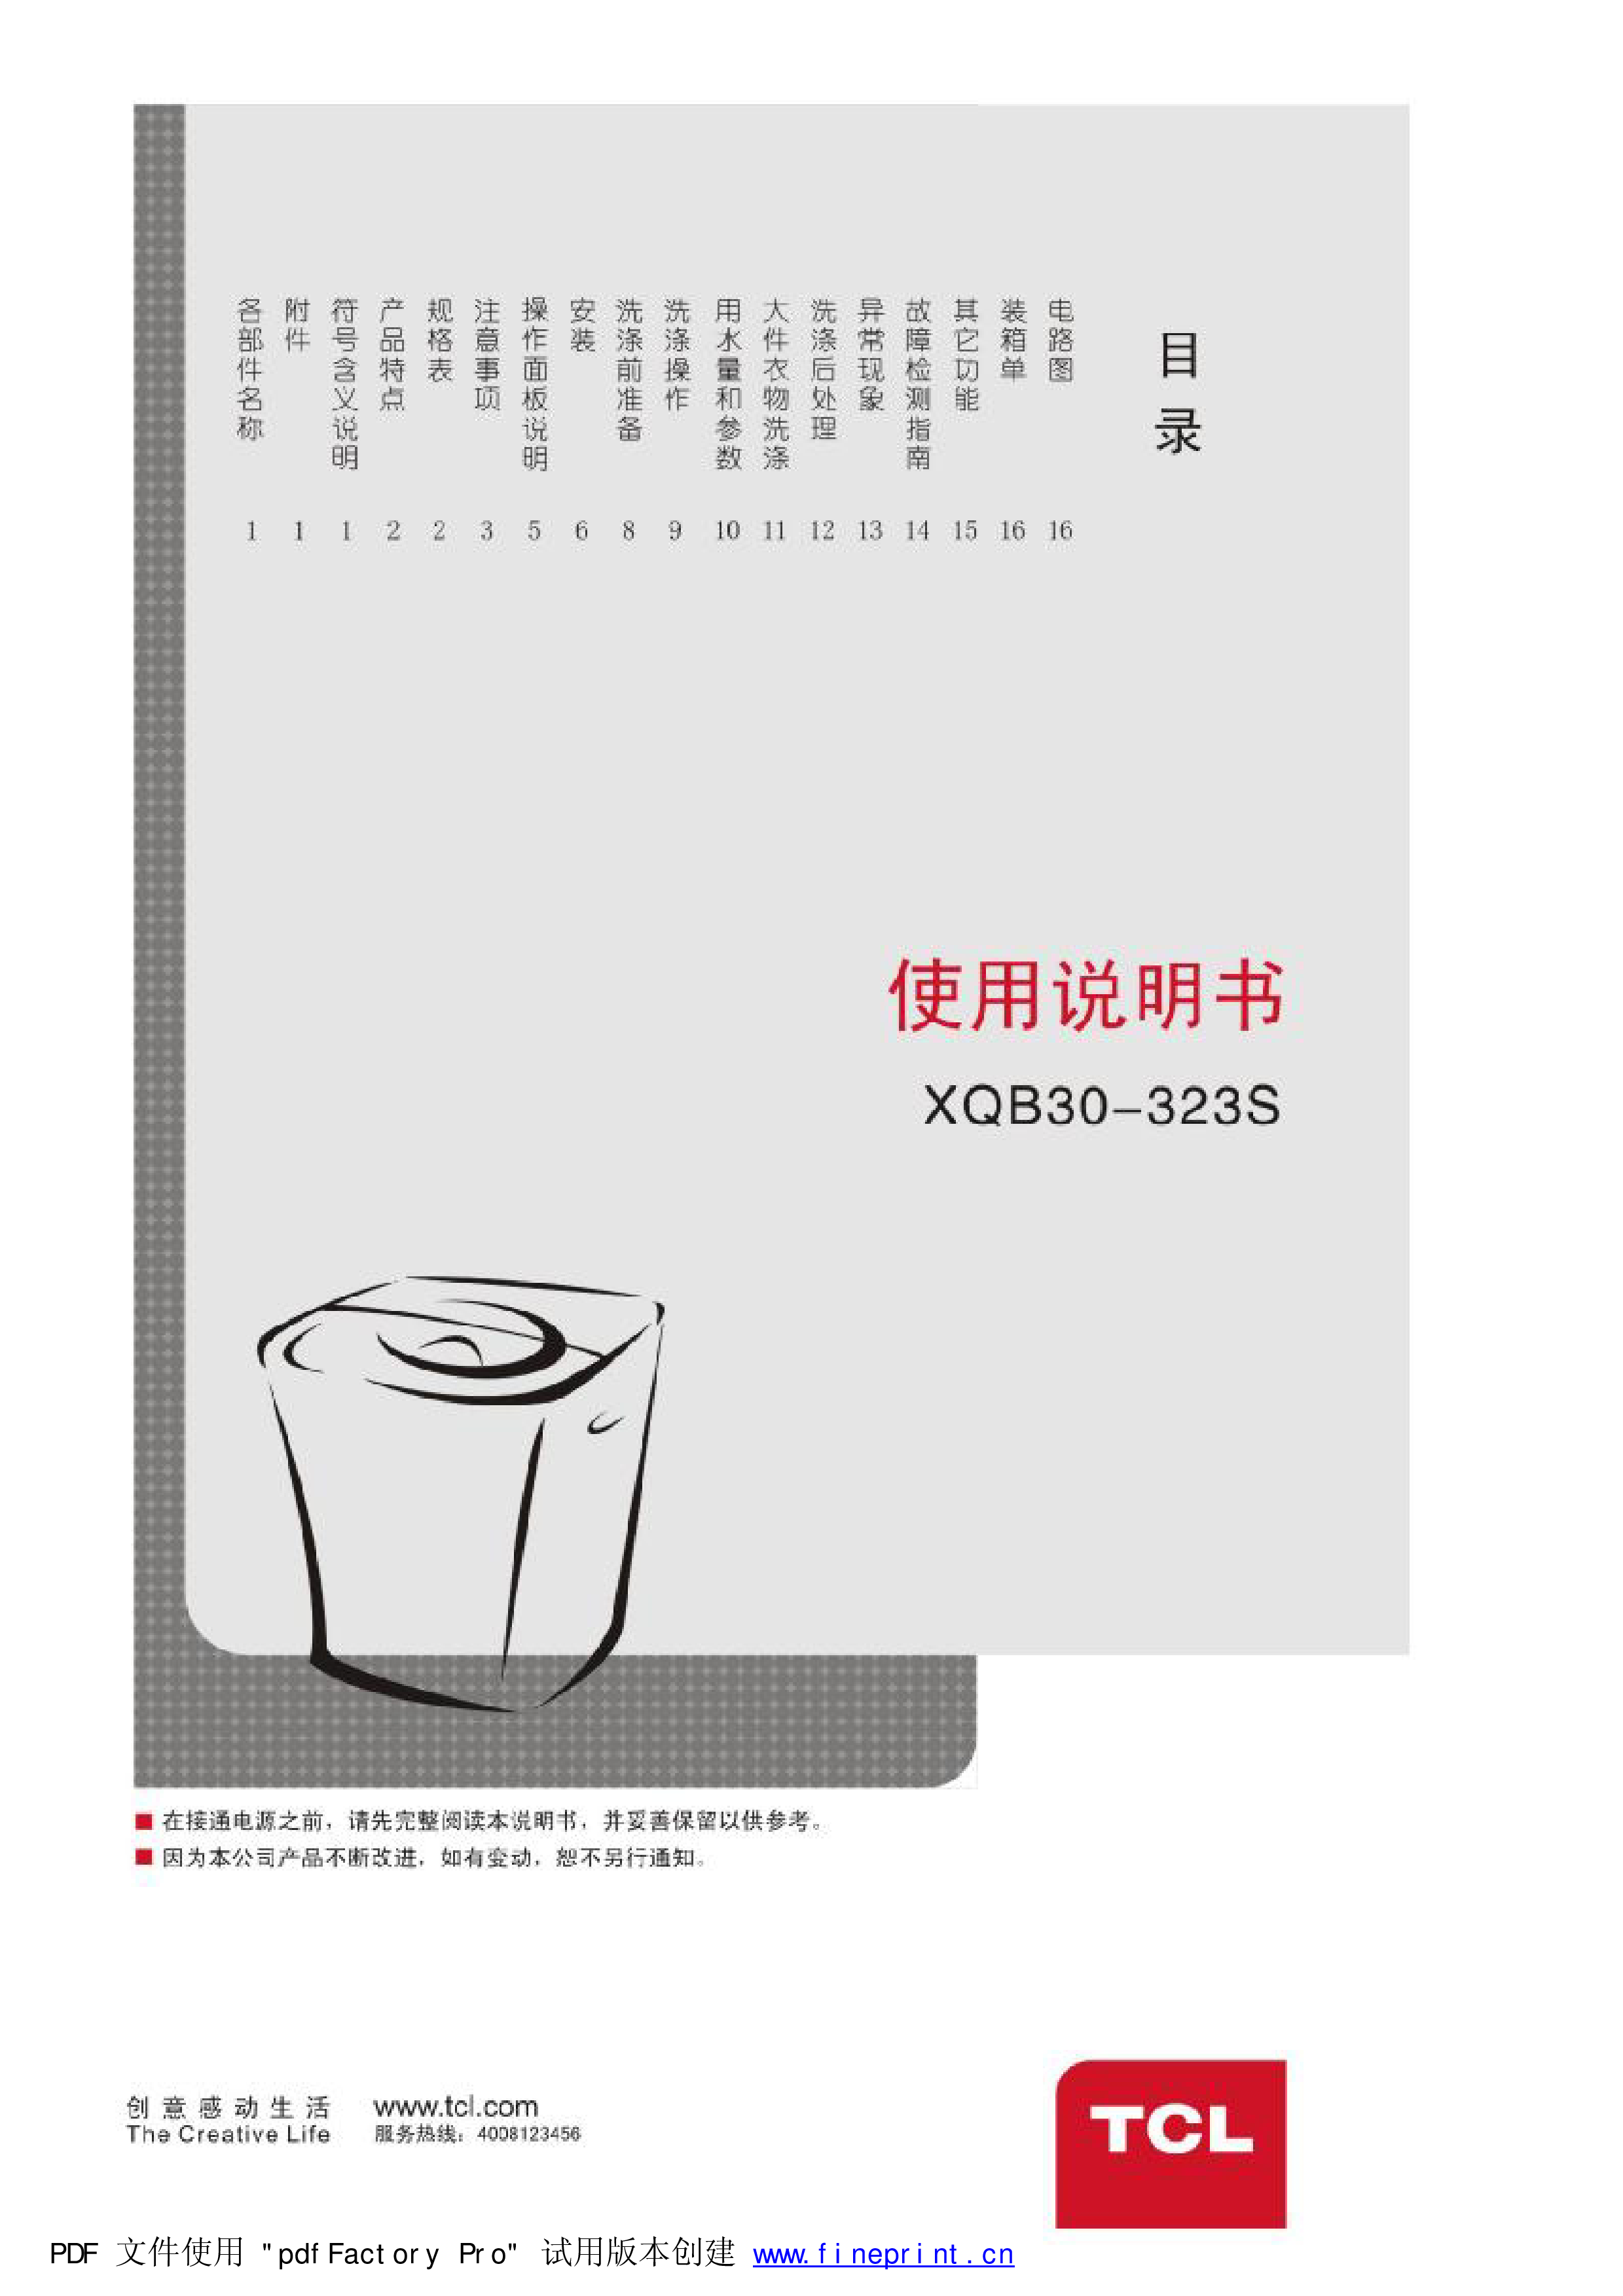 TCL XQB30-323S 使用说明书 封面